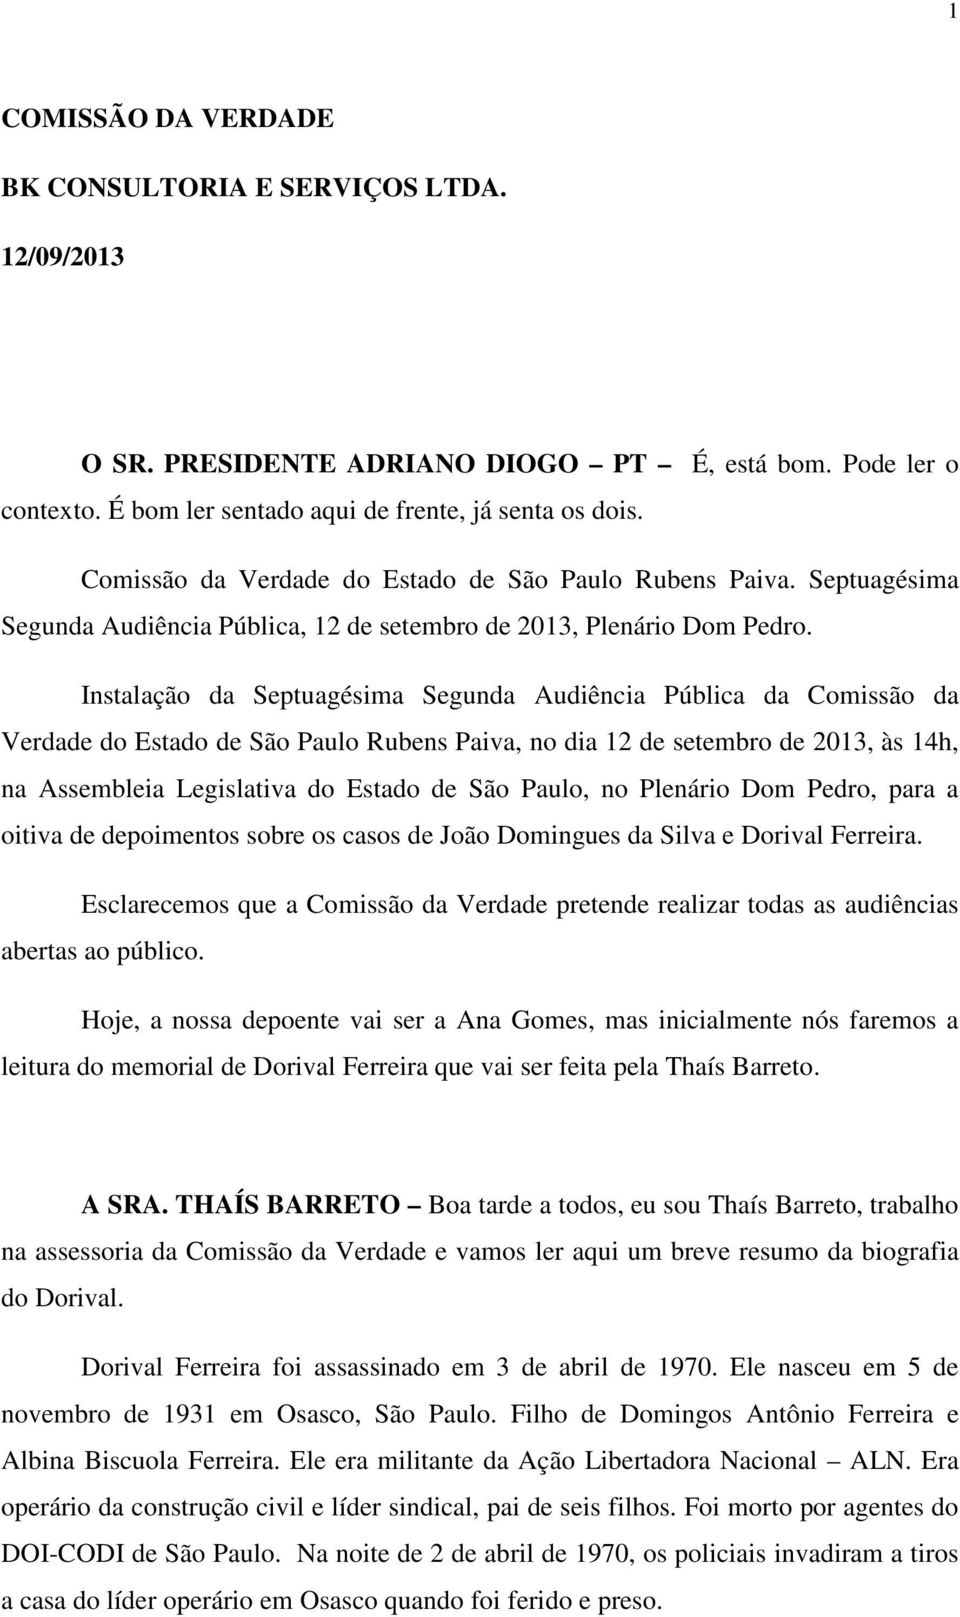 Instalação da Septuagésima Segunda Audiência Pública da Comissão da Verdade do Estado de São Paulo Rubens Paiva, no dia 12 de setembro de 2013, às 14h, na Assembleia Legislativa do Estado de São